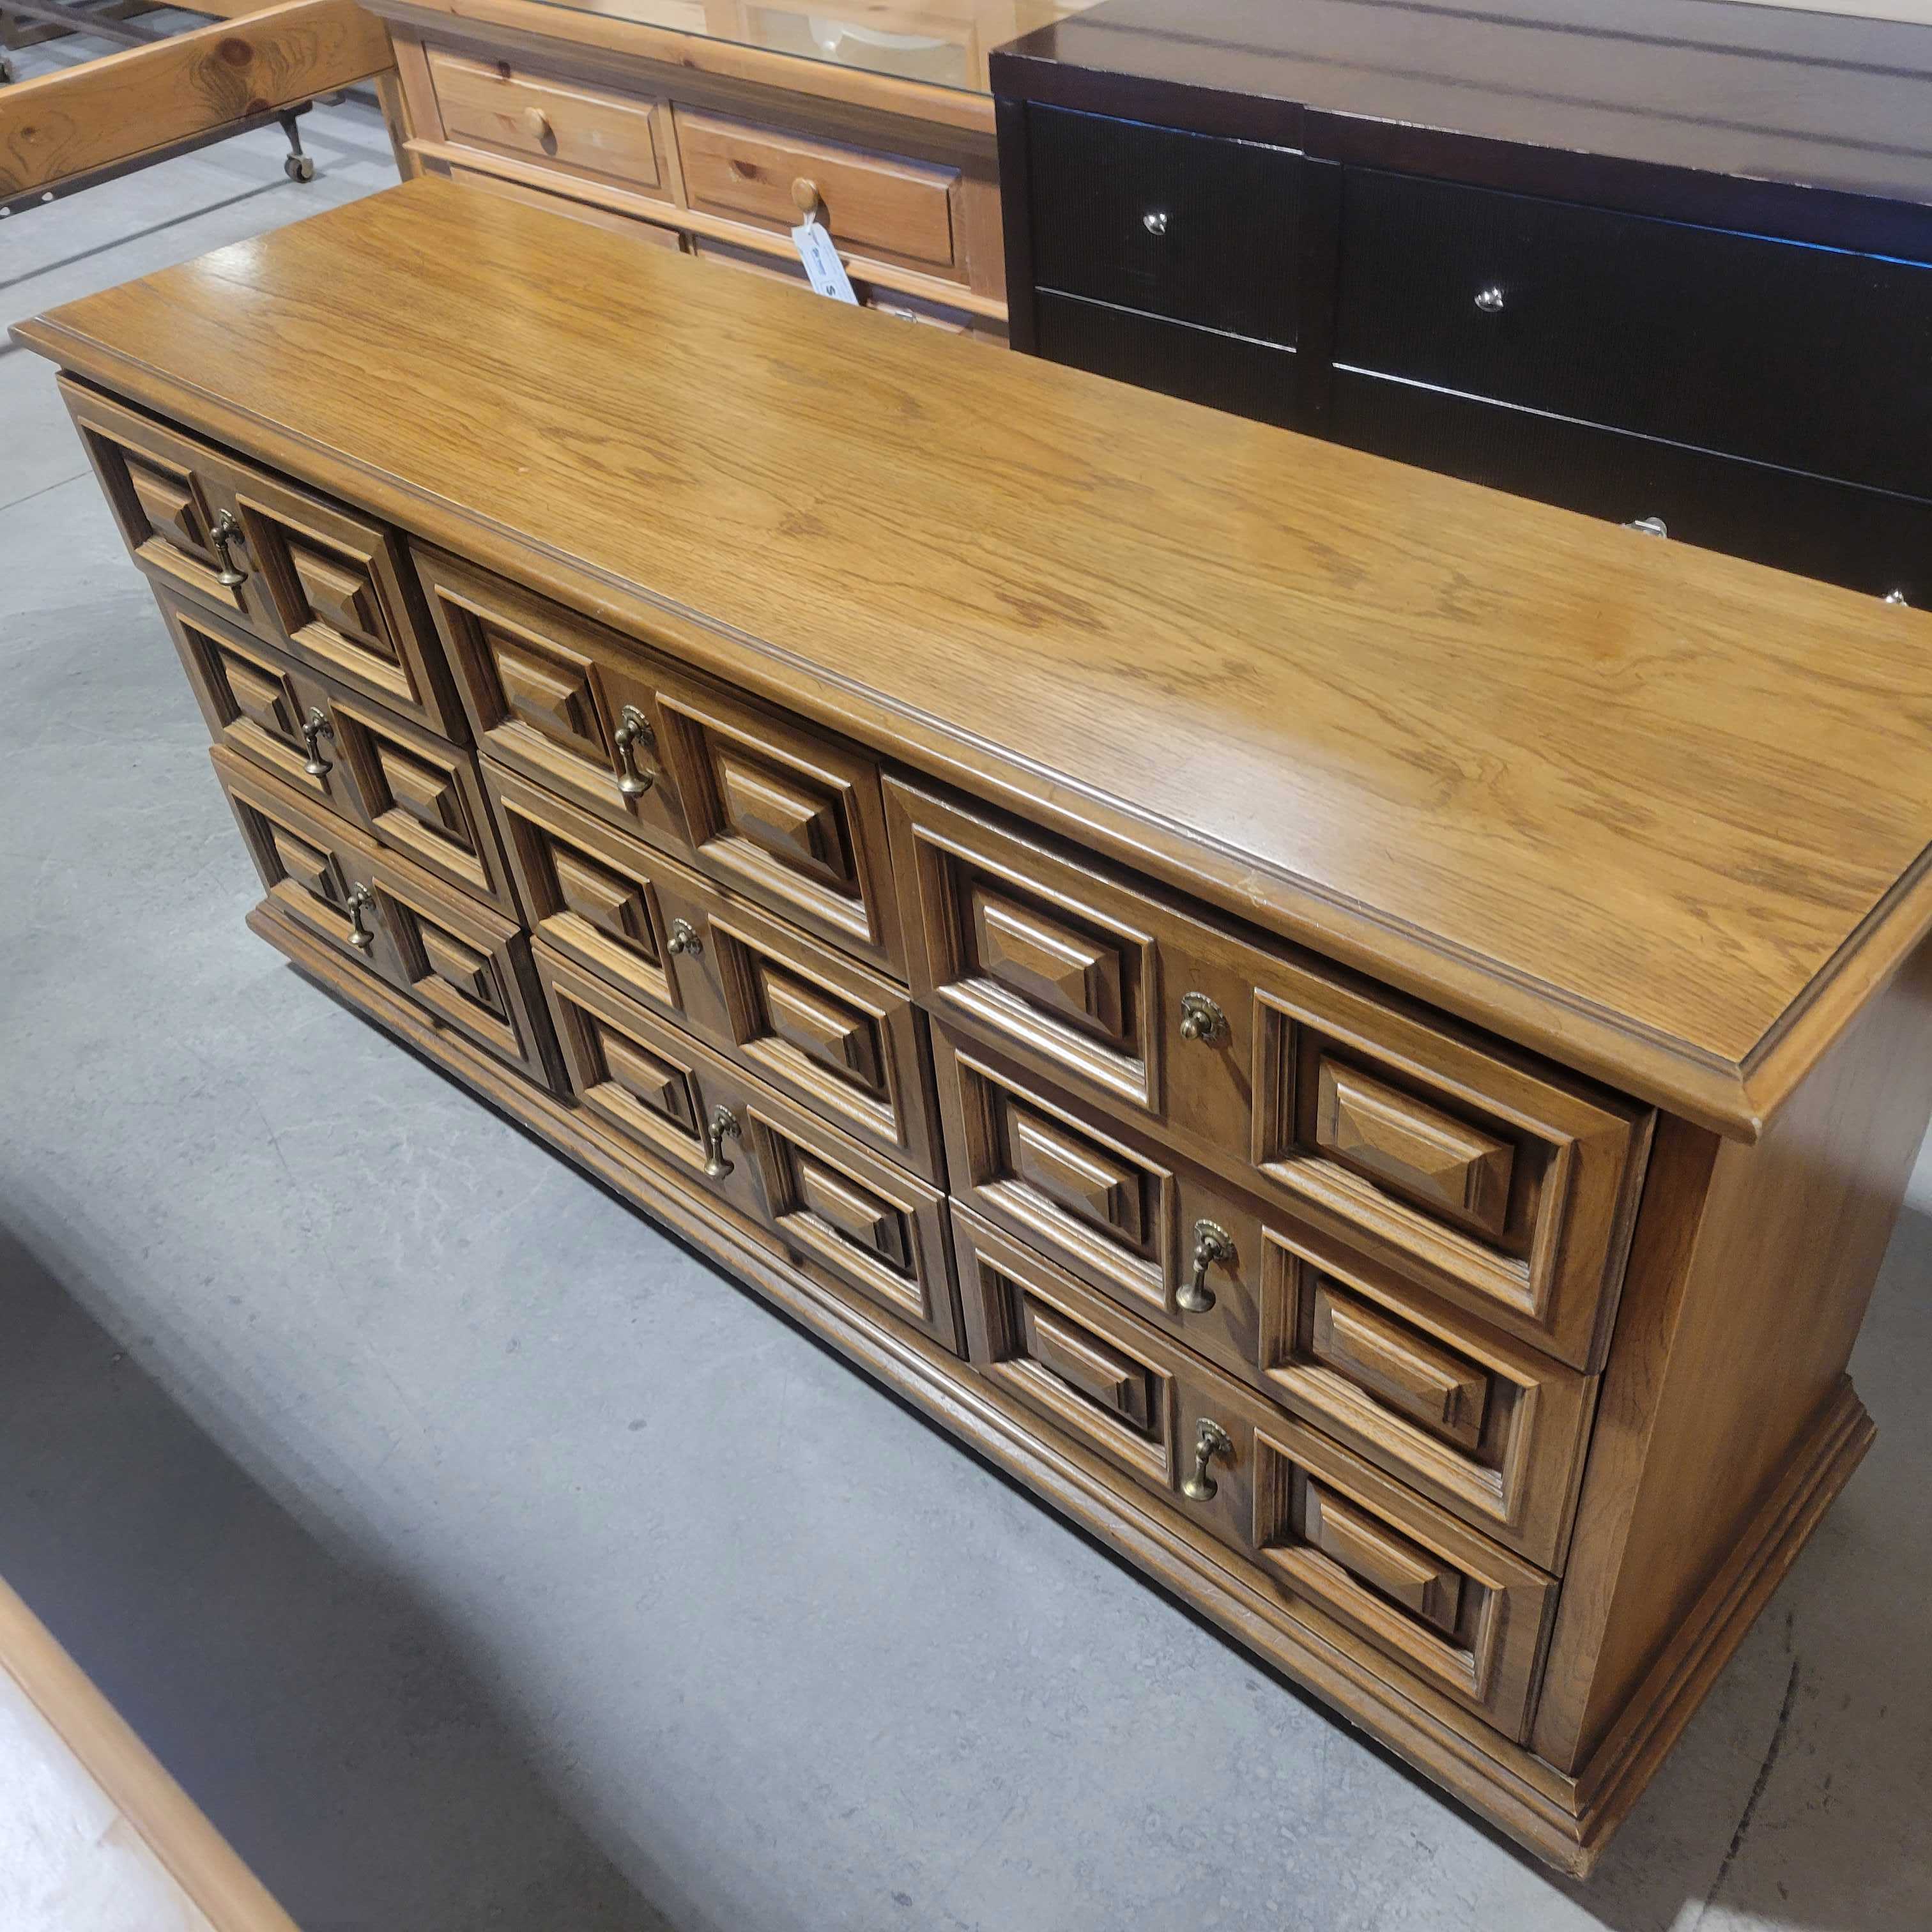 70"x 19"x 32" Wood Panel Detail 9 Drawers Brass Teardrop Pulls Dresser